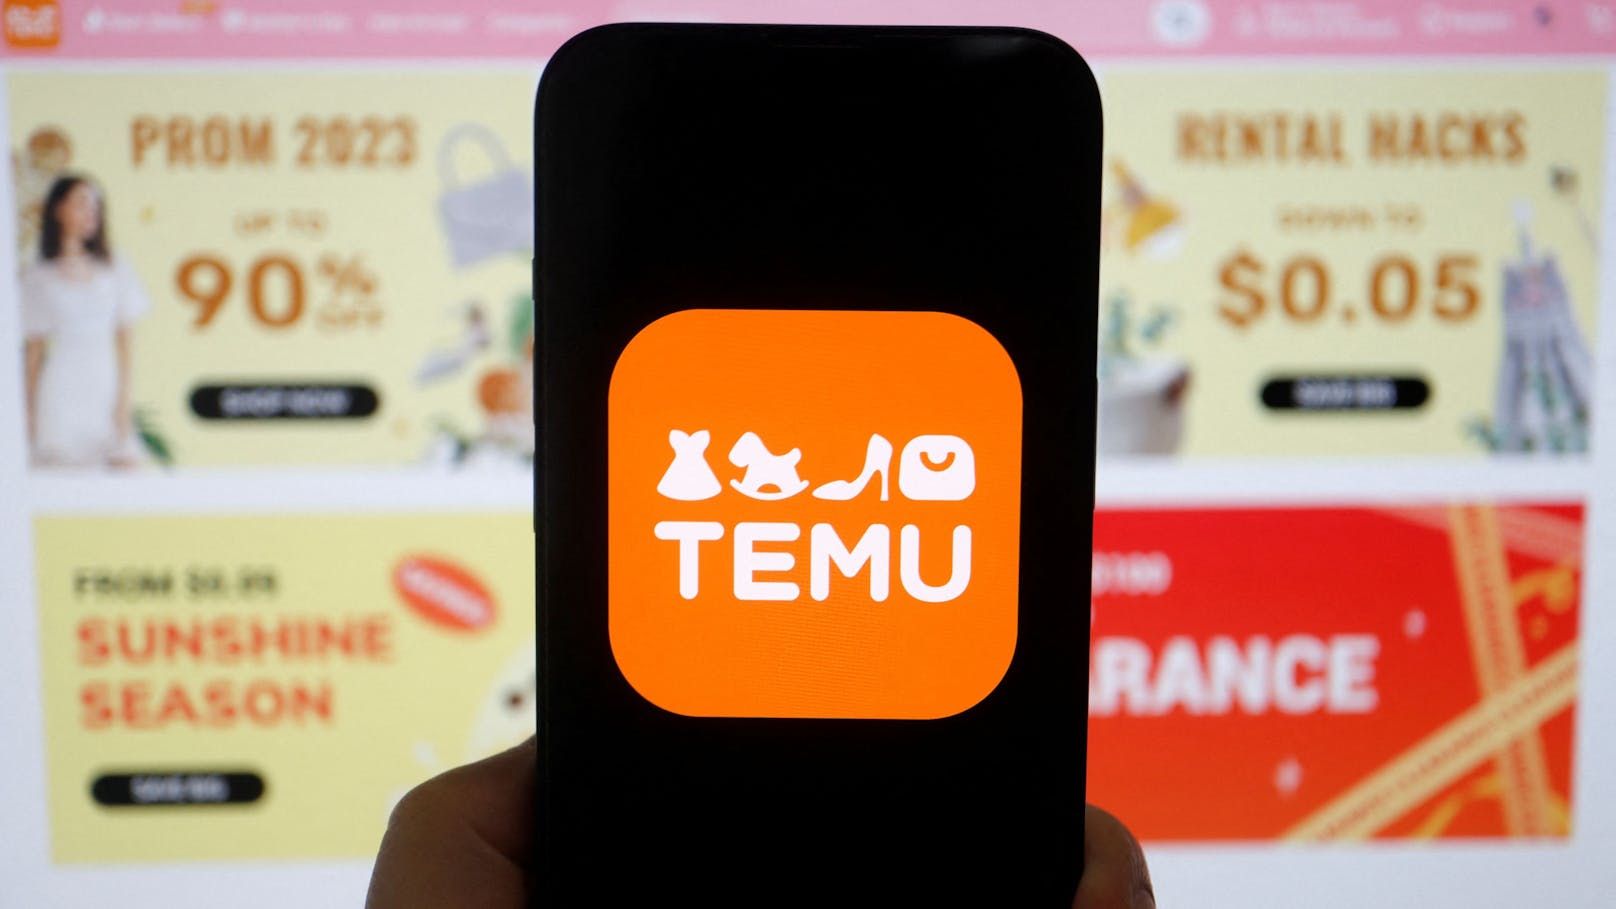 Billigst-App Temu kooperiert jetzt mit der Post